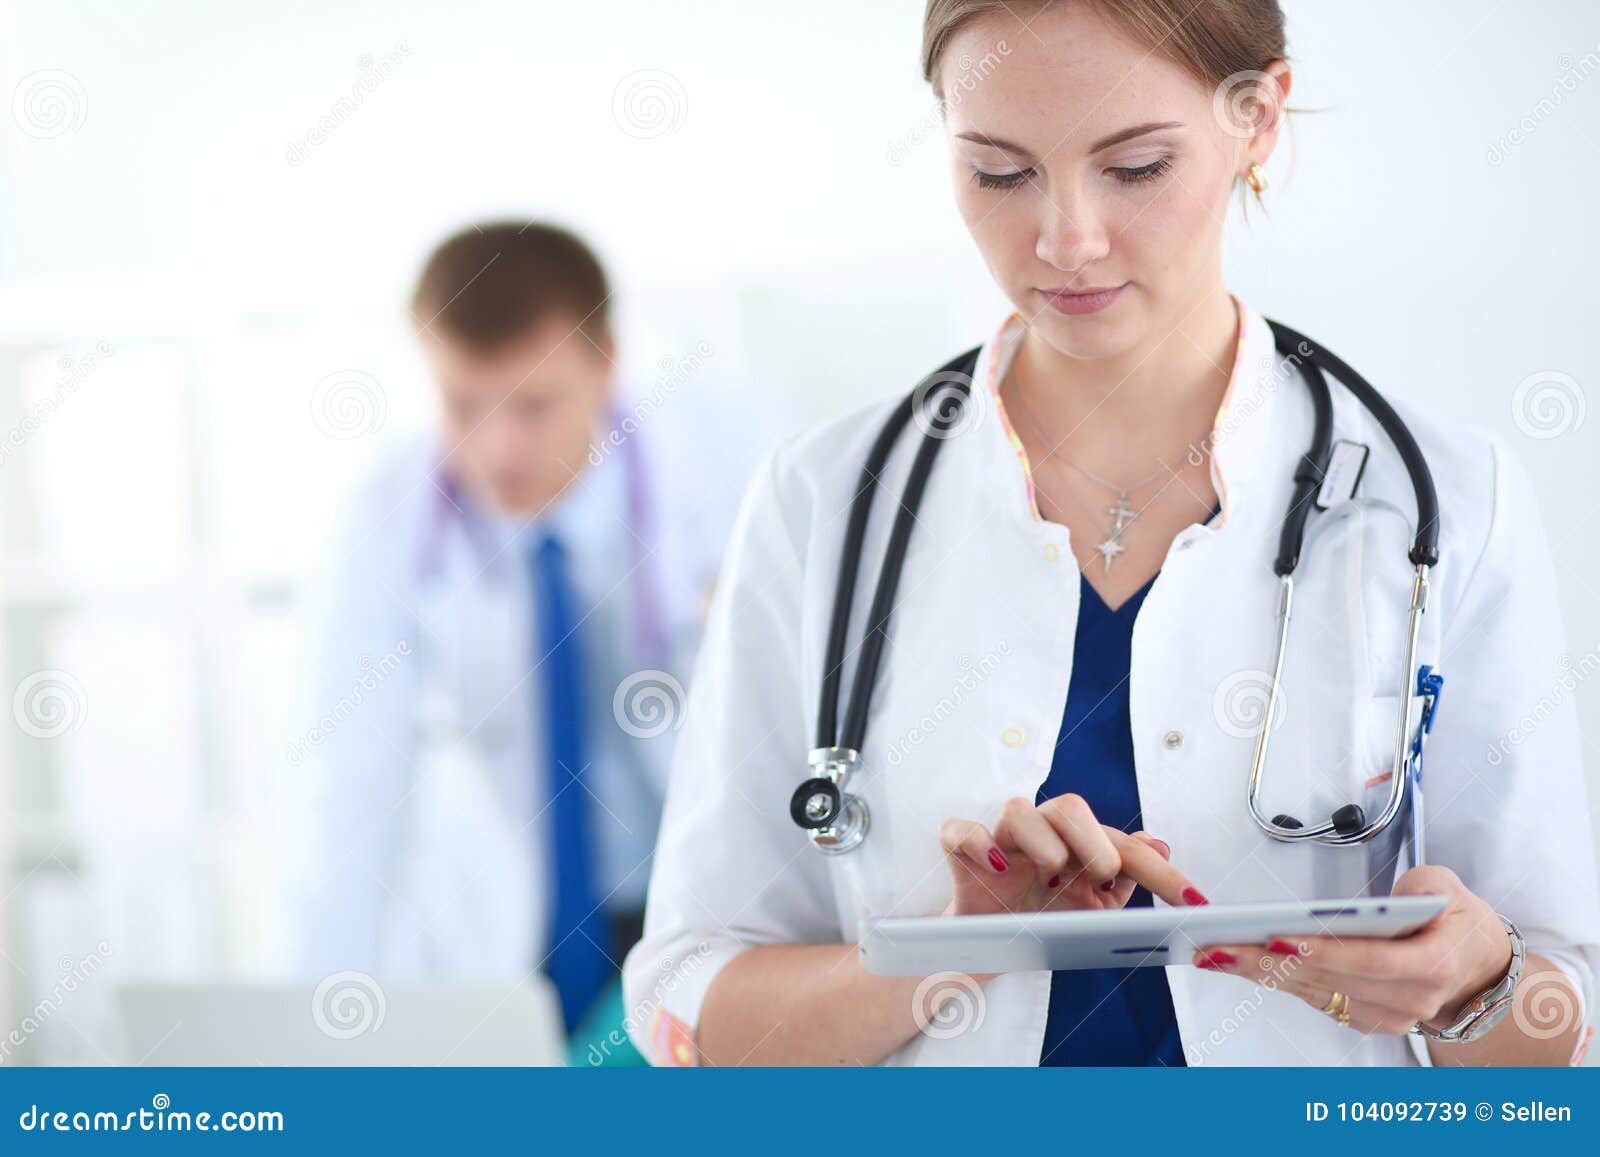 Люди выздоровят. Доктор женщина. Лечебное дело врач. Доктор со стетоскопом. Женщина врач фото.